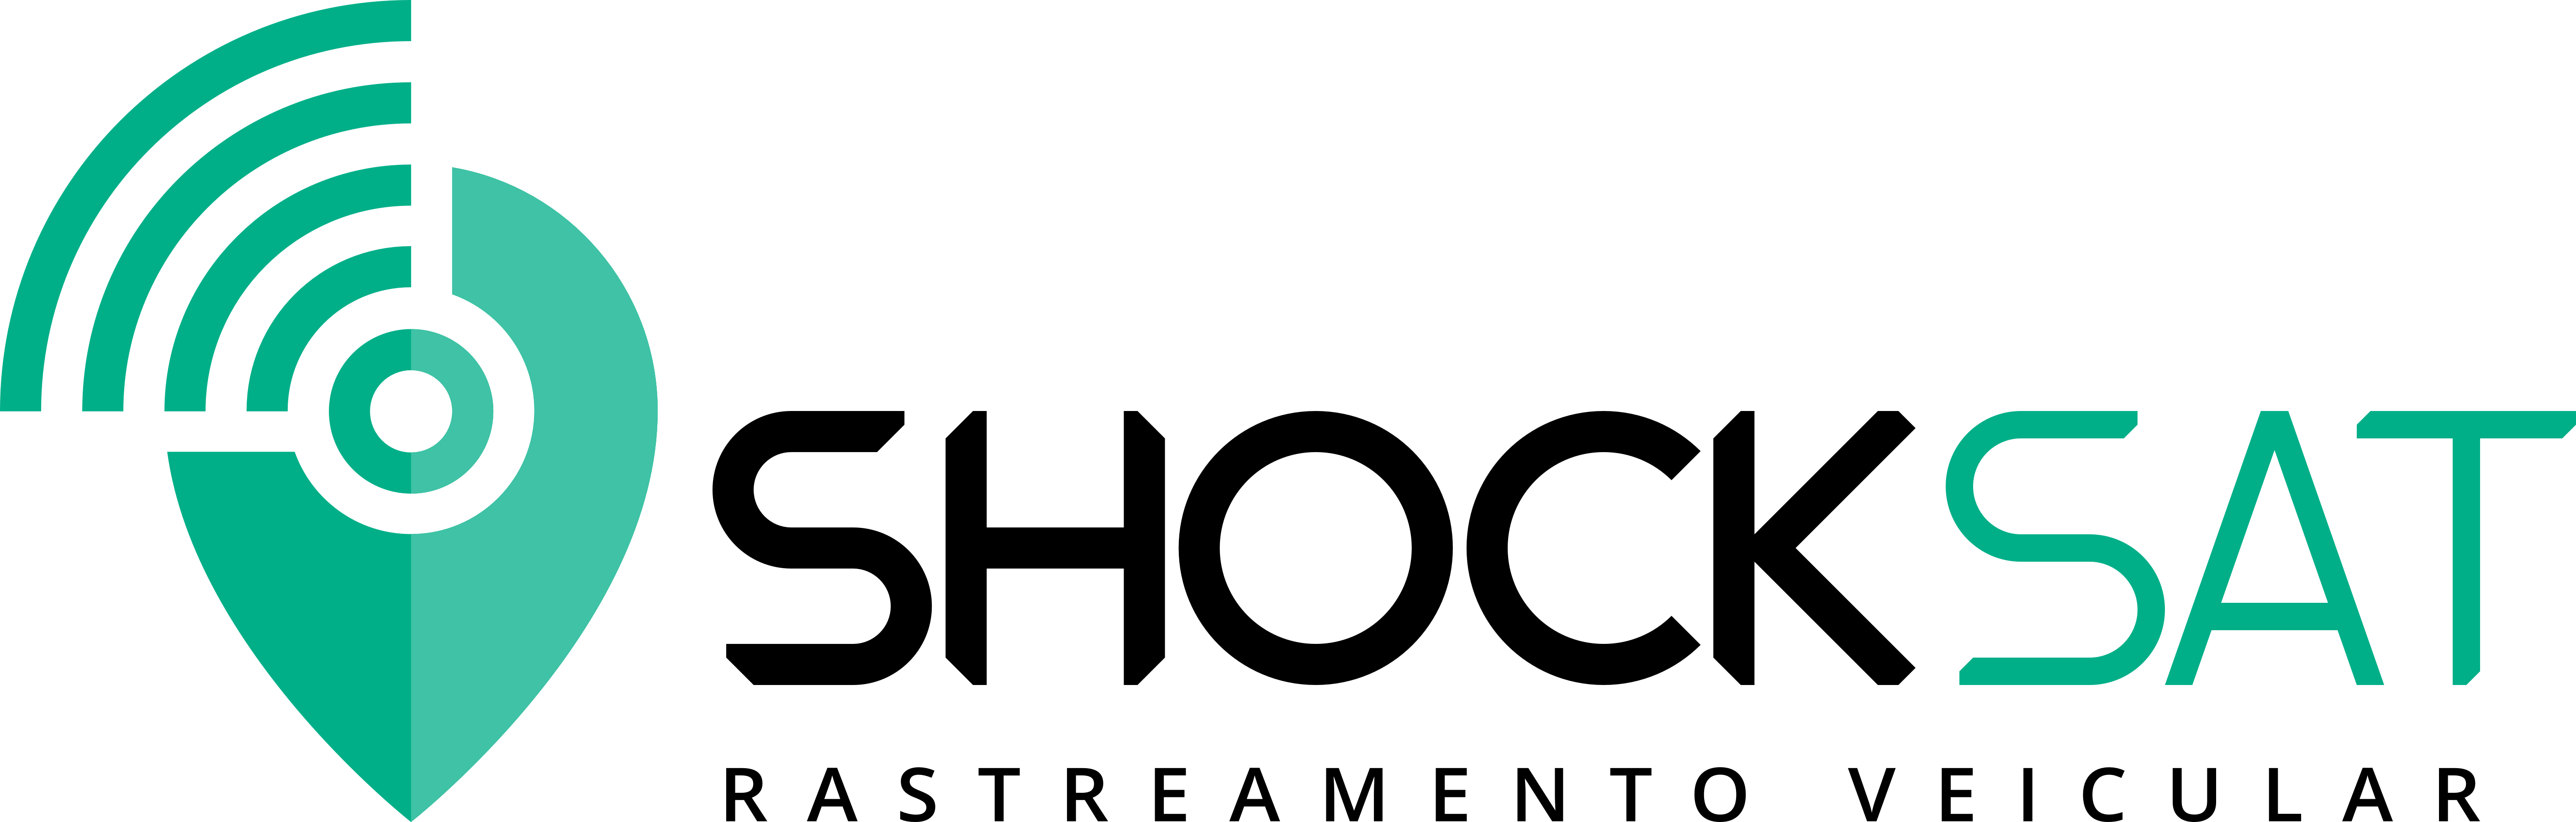 shocksat-logo